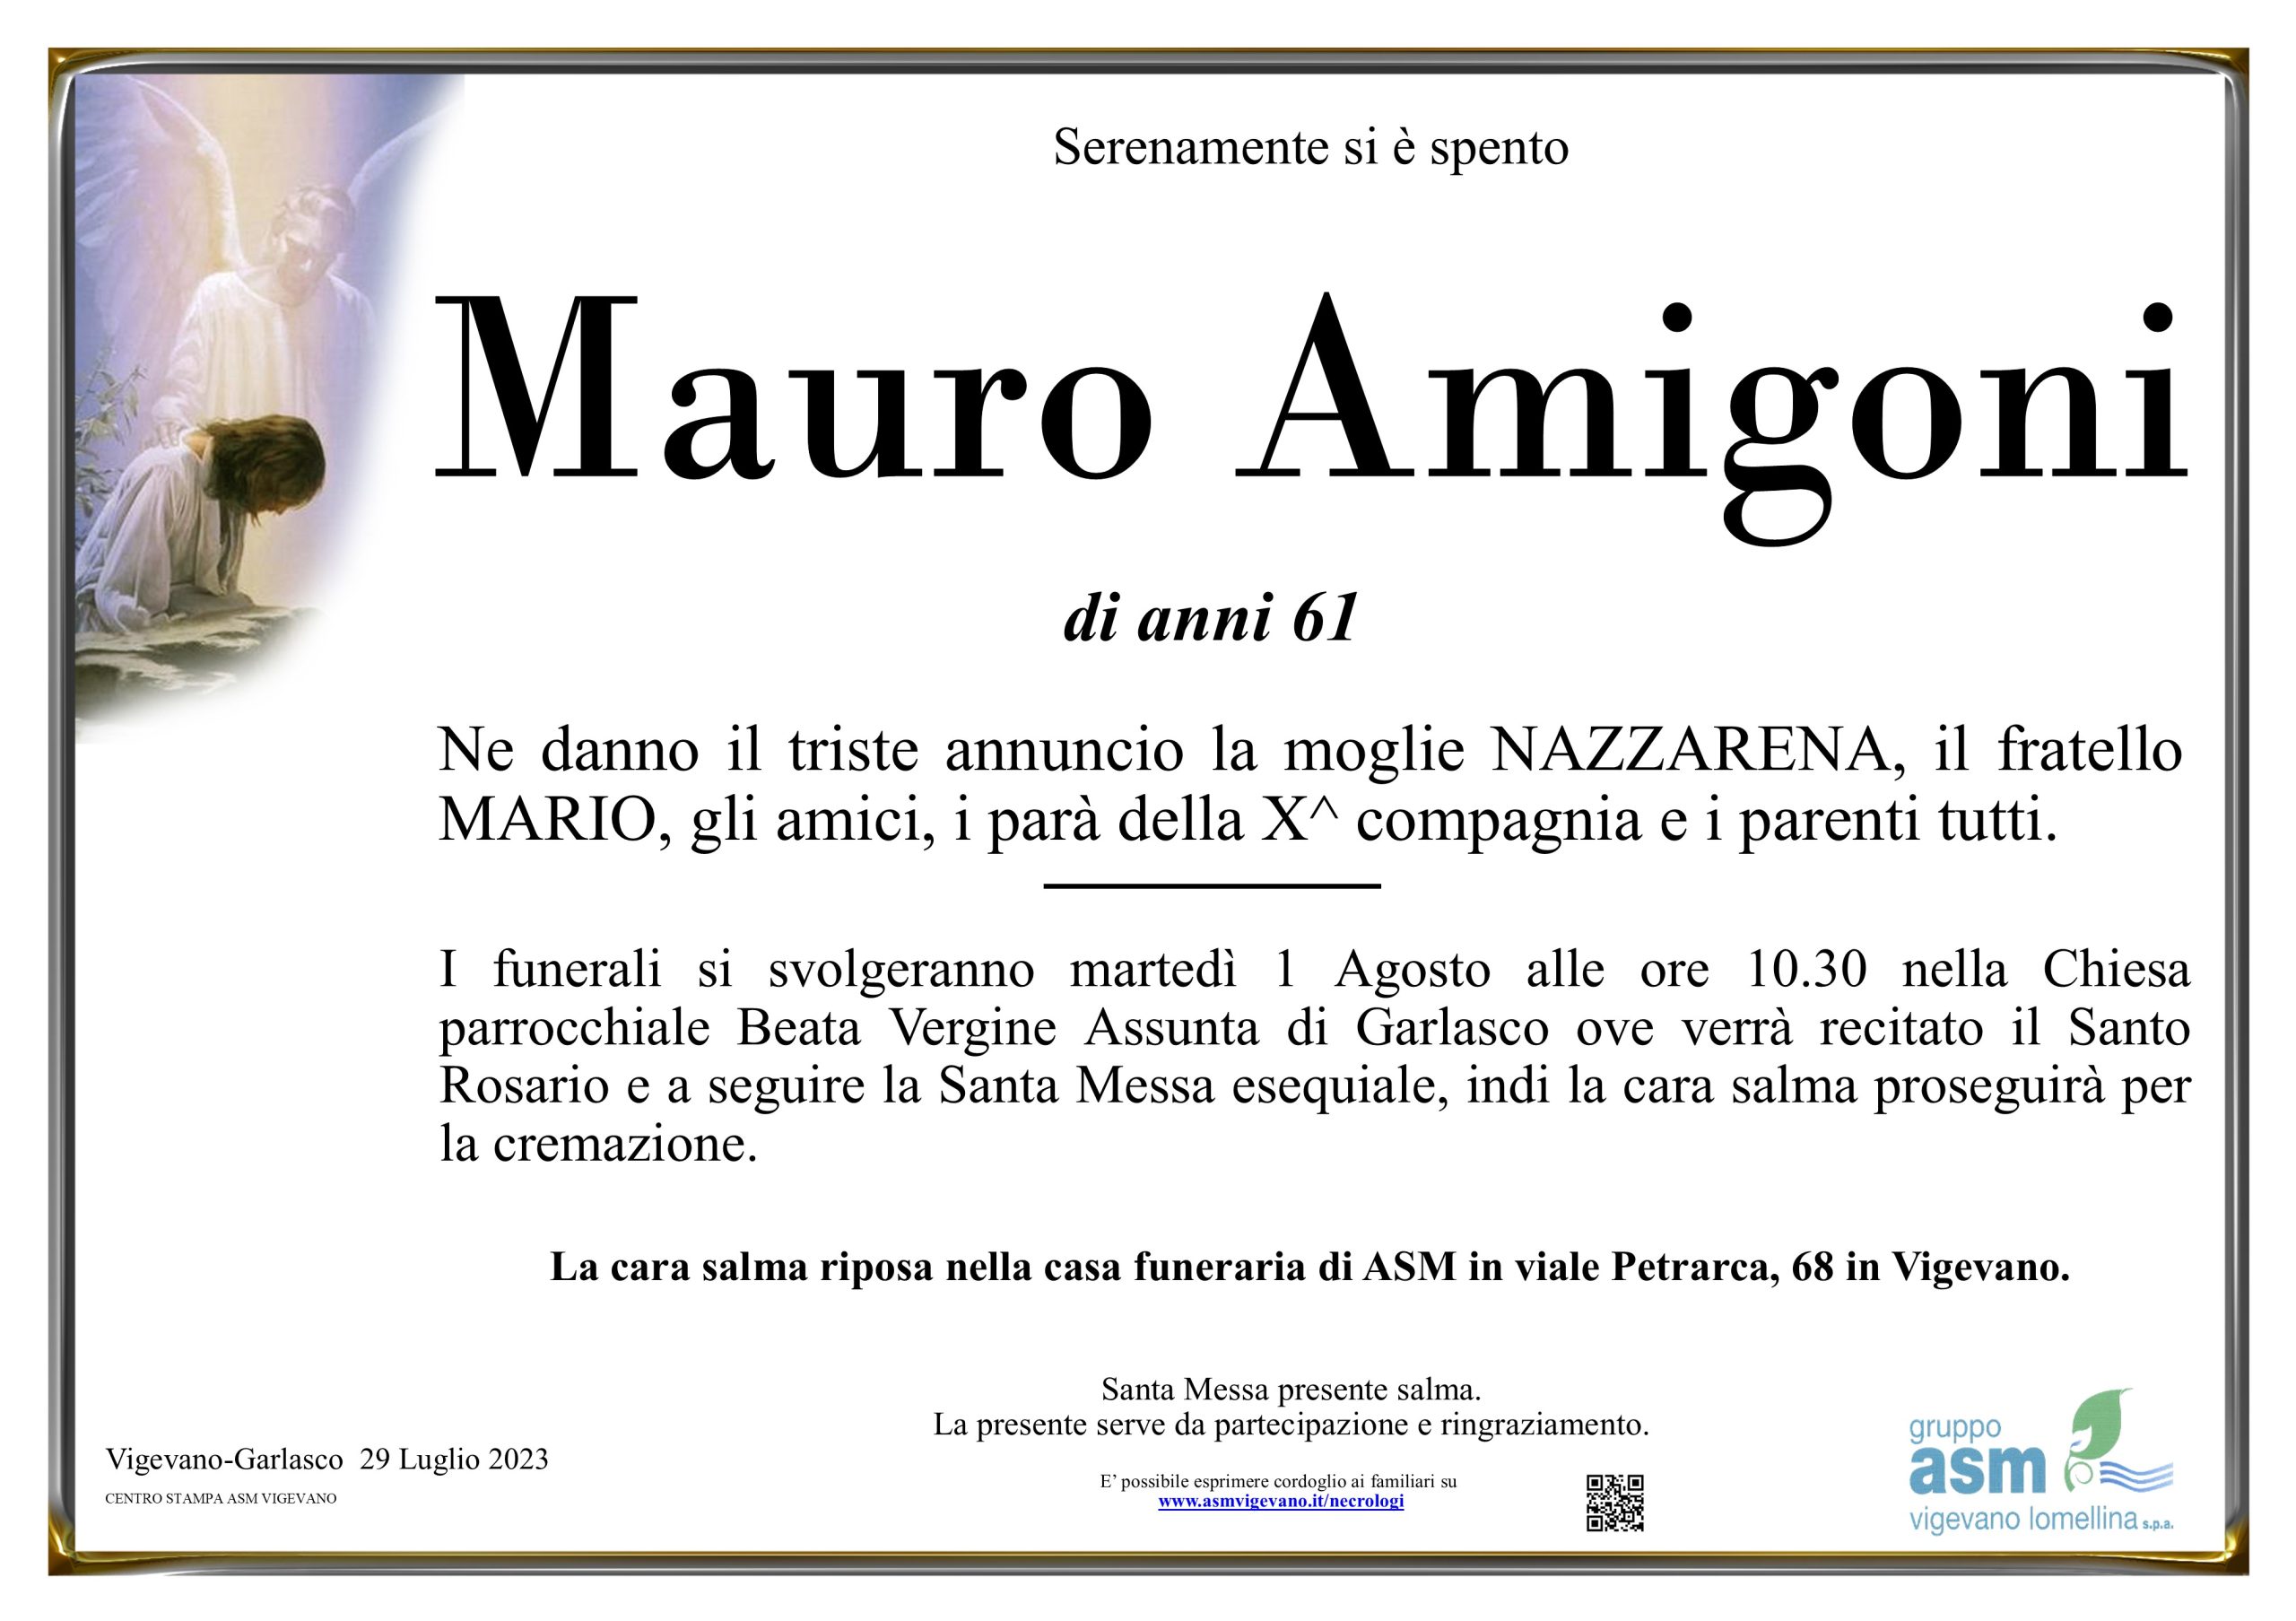 Mauro Amigoni